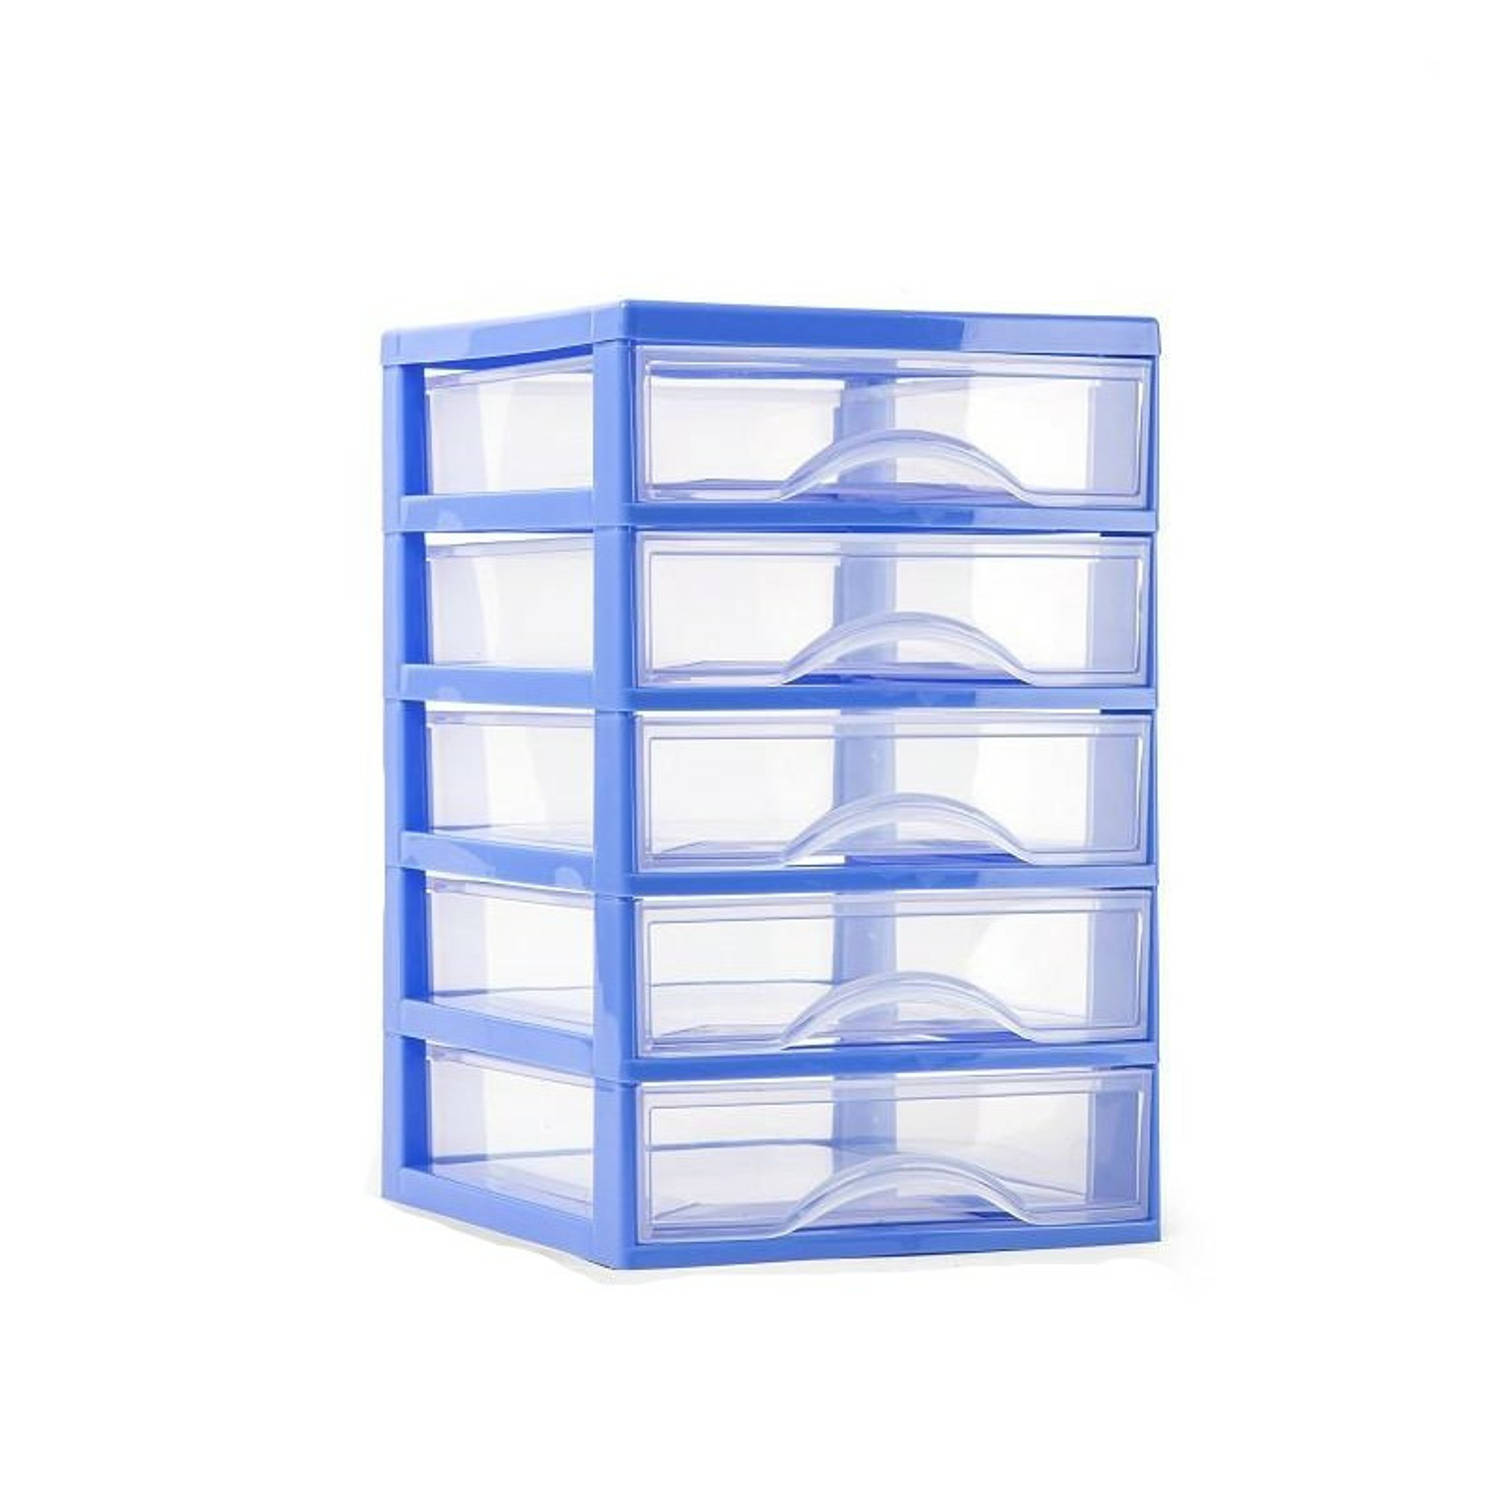 Plasticforte Ladeblokje/bureau organizer 5x lades - blauw/transparant - L18 x B21 x H28 cm - plastic